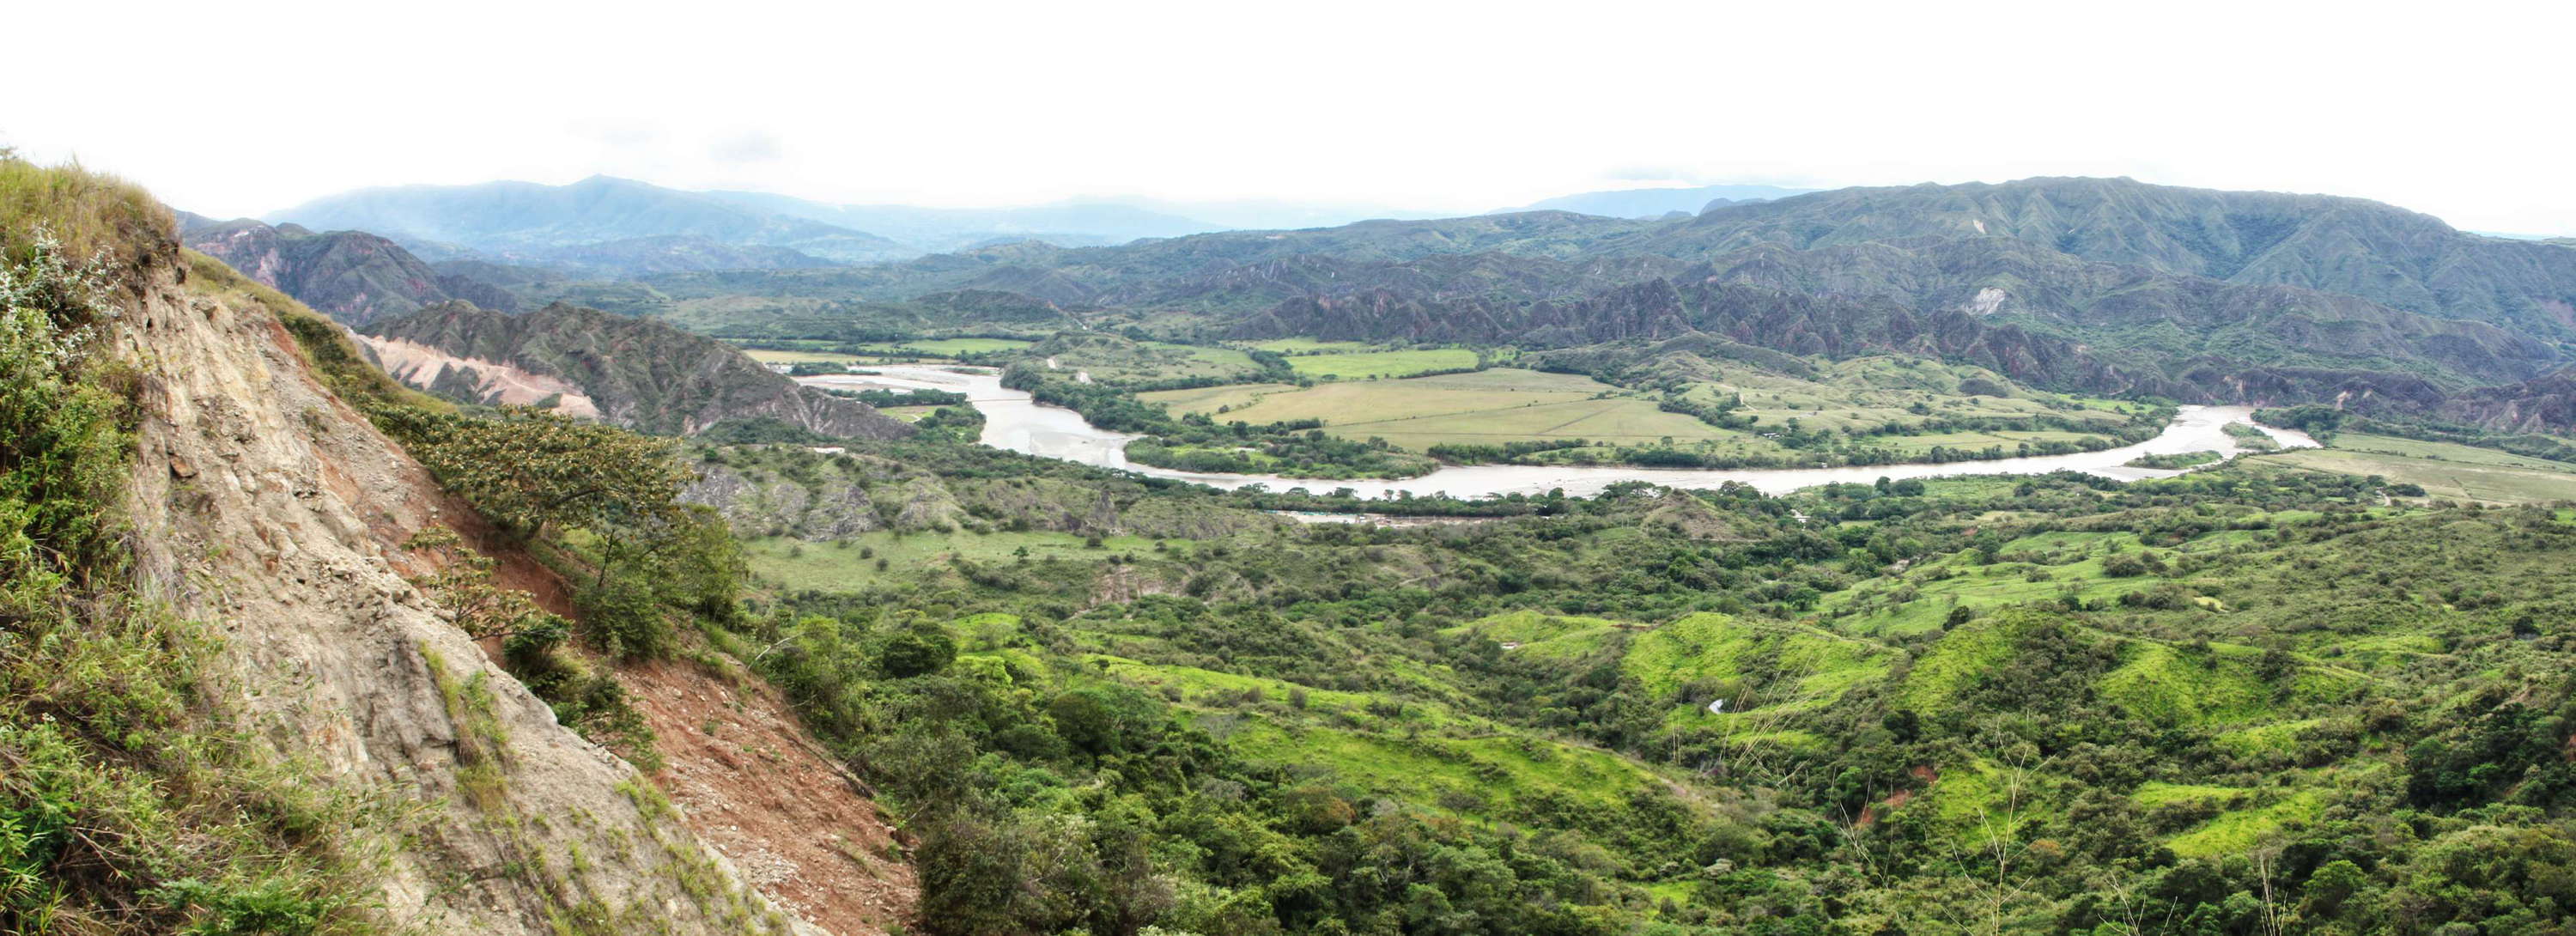 Upper Río Magdalena valley